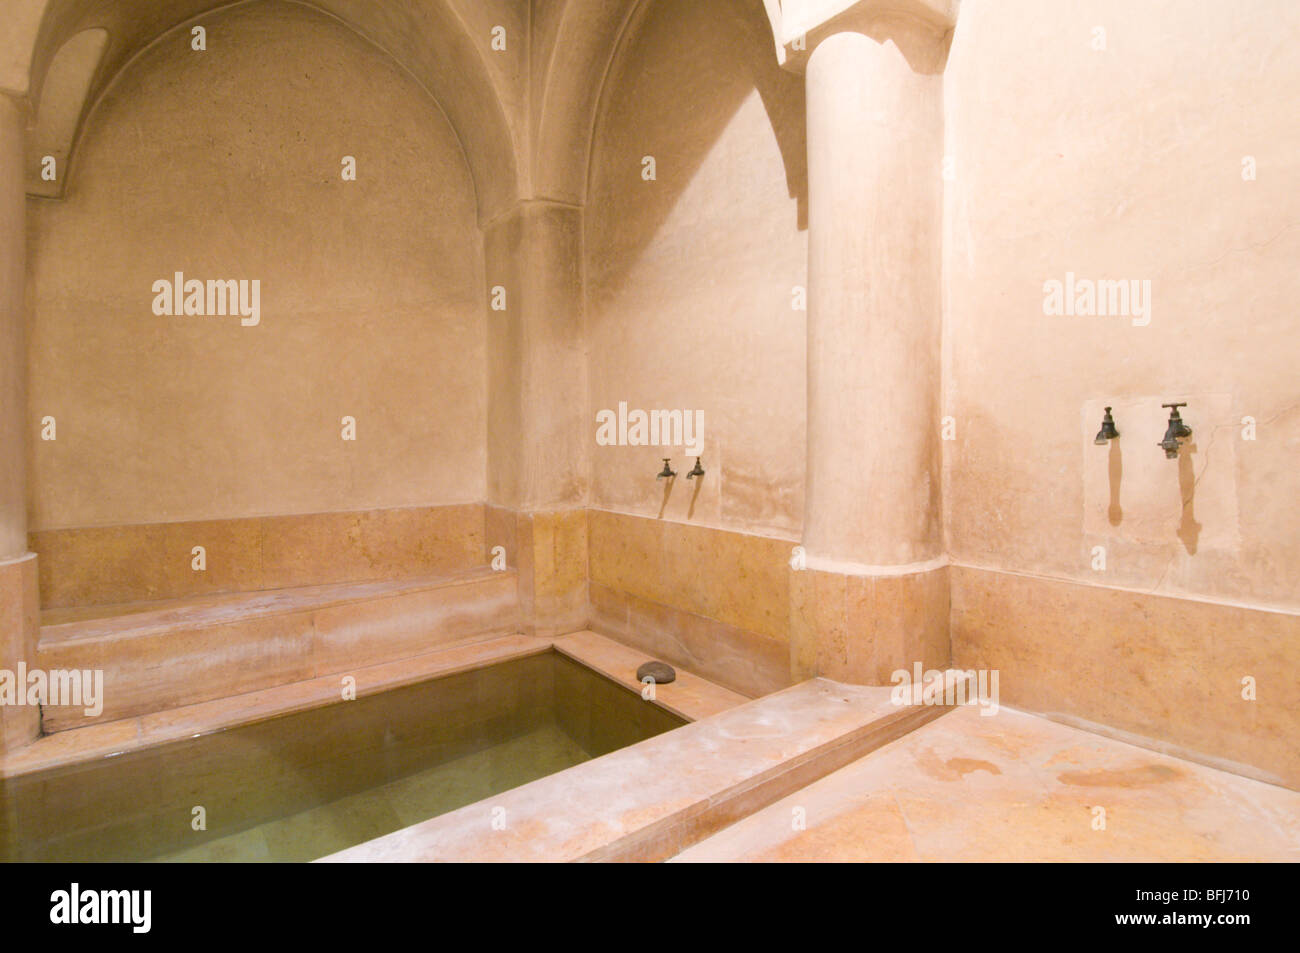 Le Maroc, Marrakech, Riad Caravanserai, salle de bains avec murs en plâtre marocain tadelakt technique appelée Banque D'Images